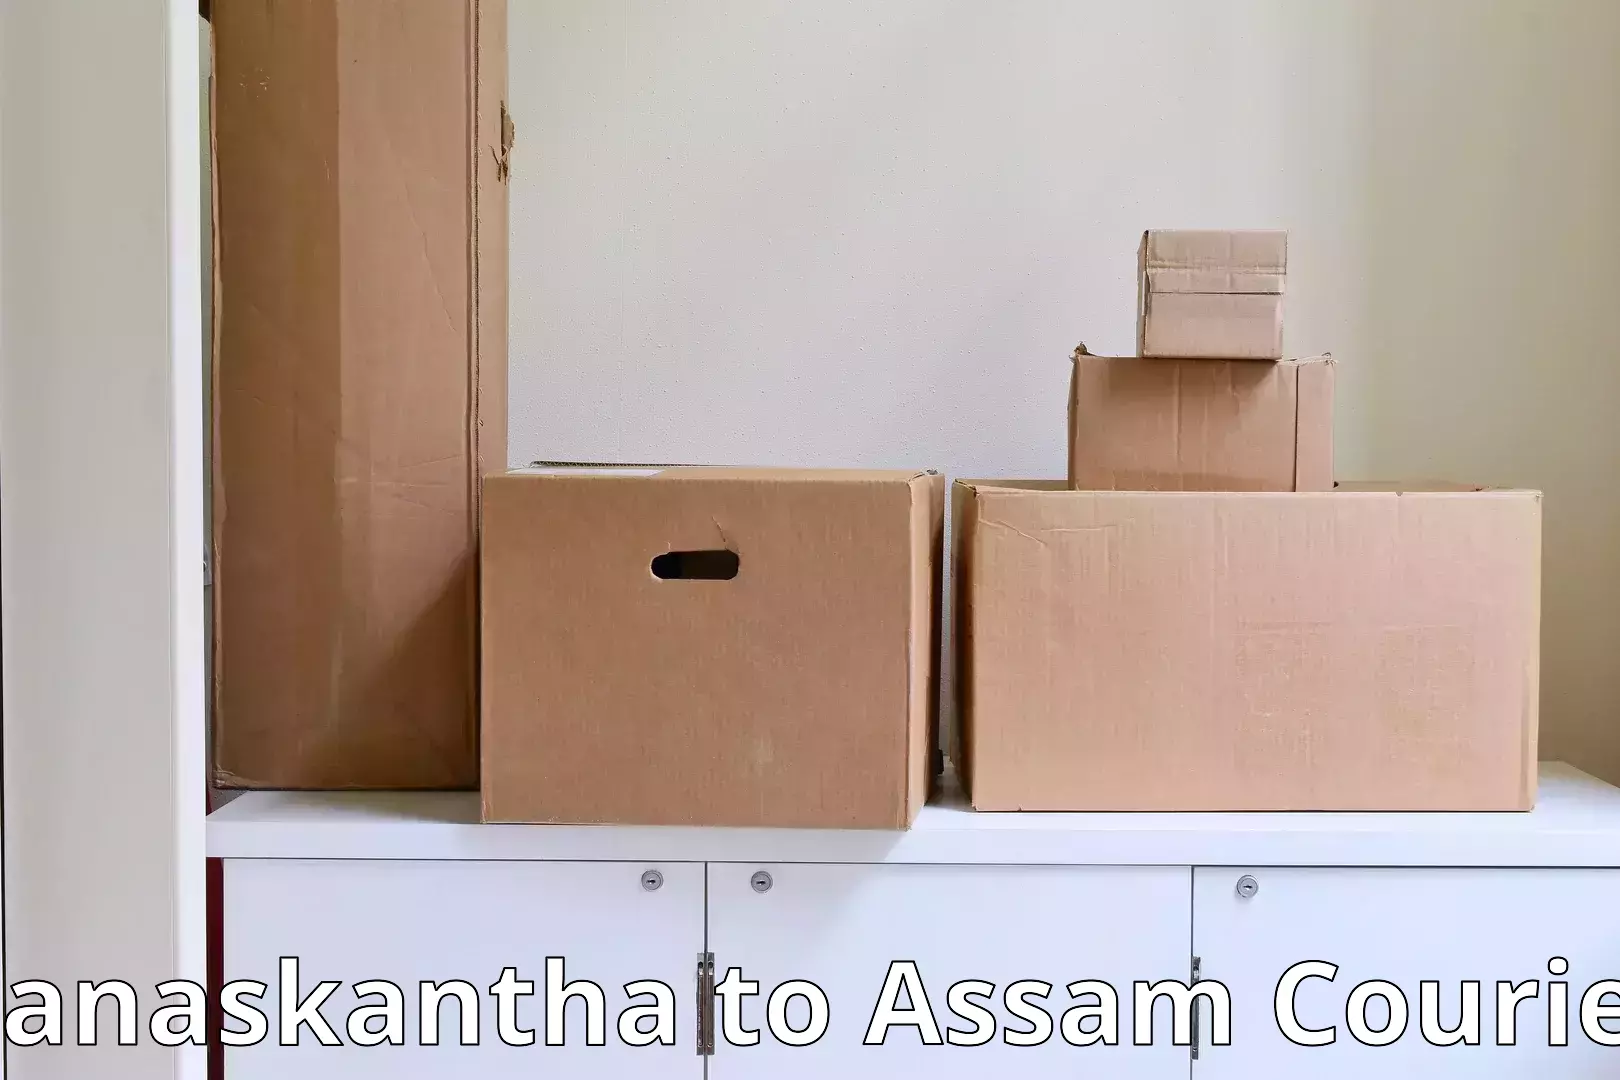 Household moving experts Banaskantha to Jorabat